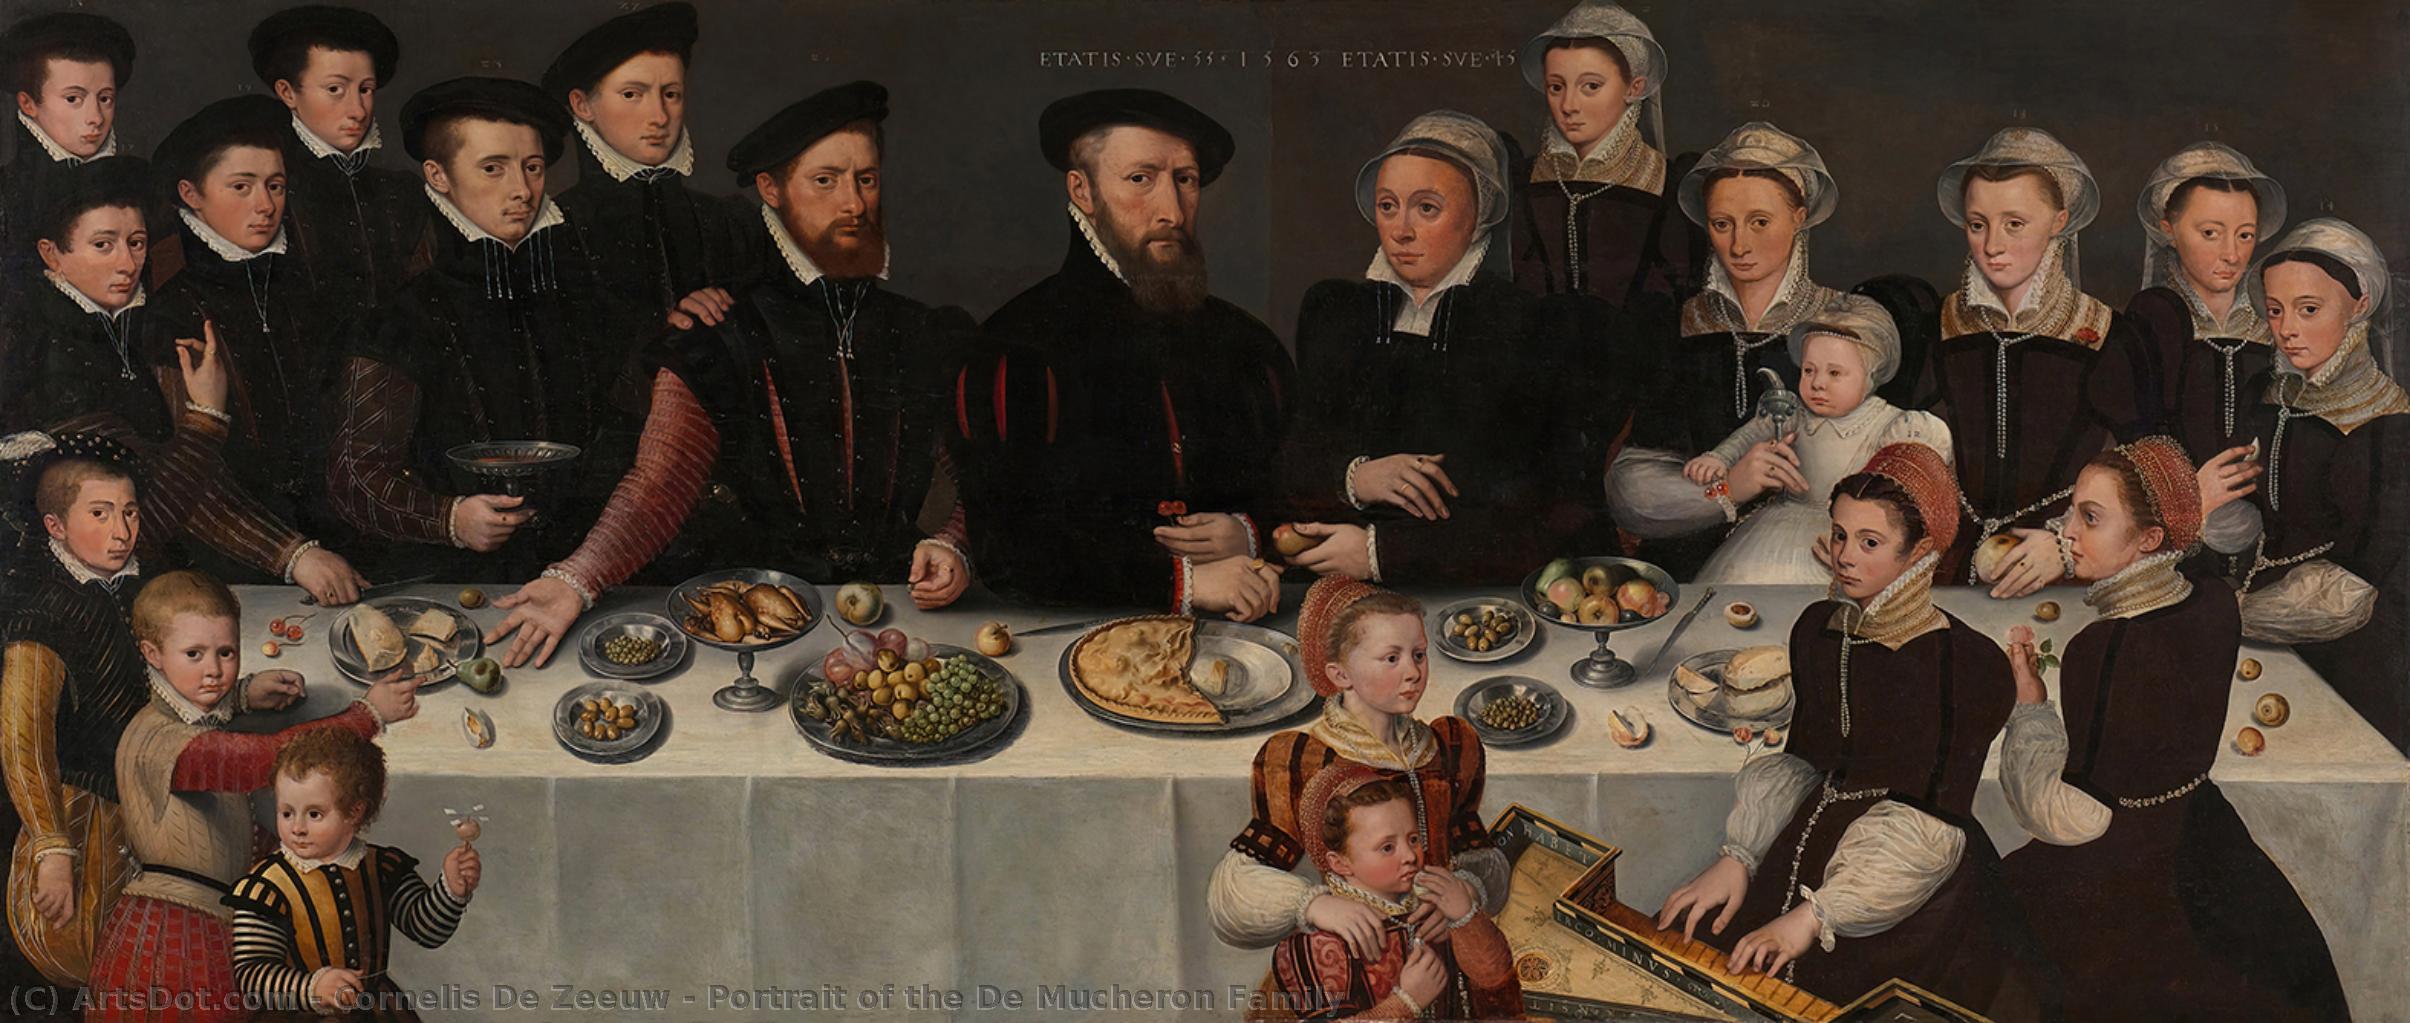 Wikioo.org – L'Enciclopedia delle Belle Arti - Pittura, Opere di Cornelis De Zeeuw - Ritratto del de mucheron Famiglia